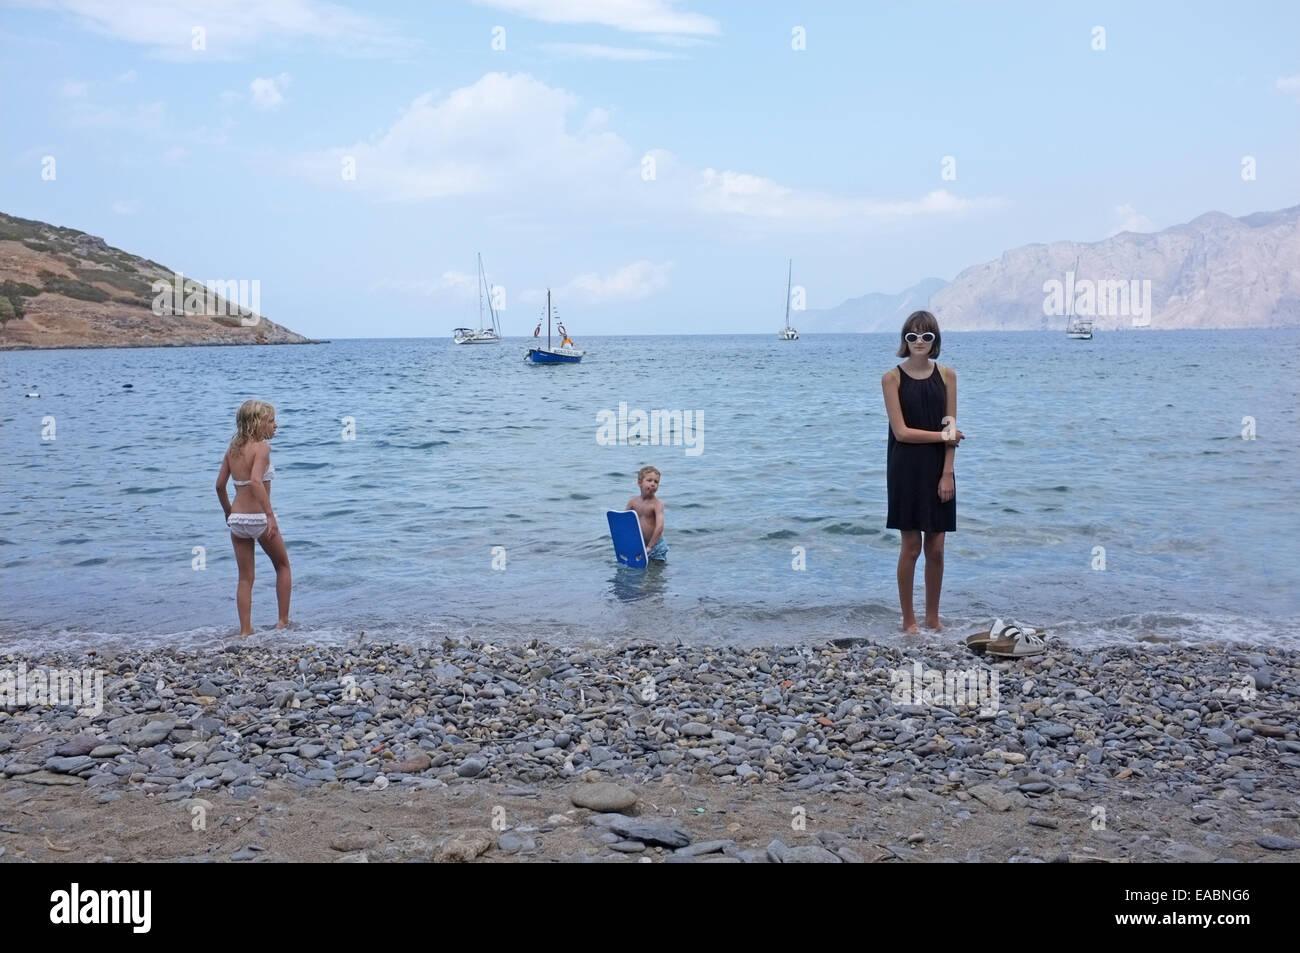 Une adolescente en vacances en Crète, surveillée par deux enfants Banque D'Images